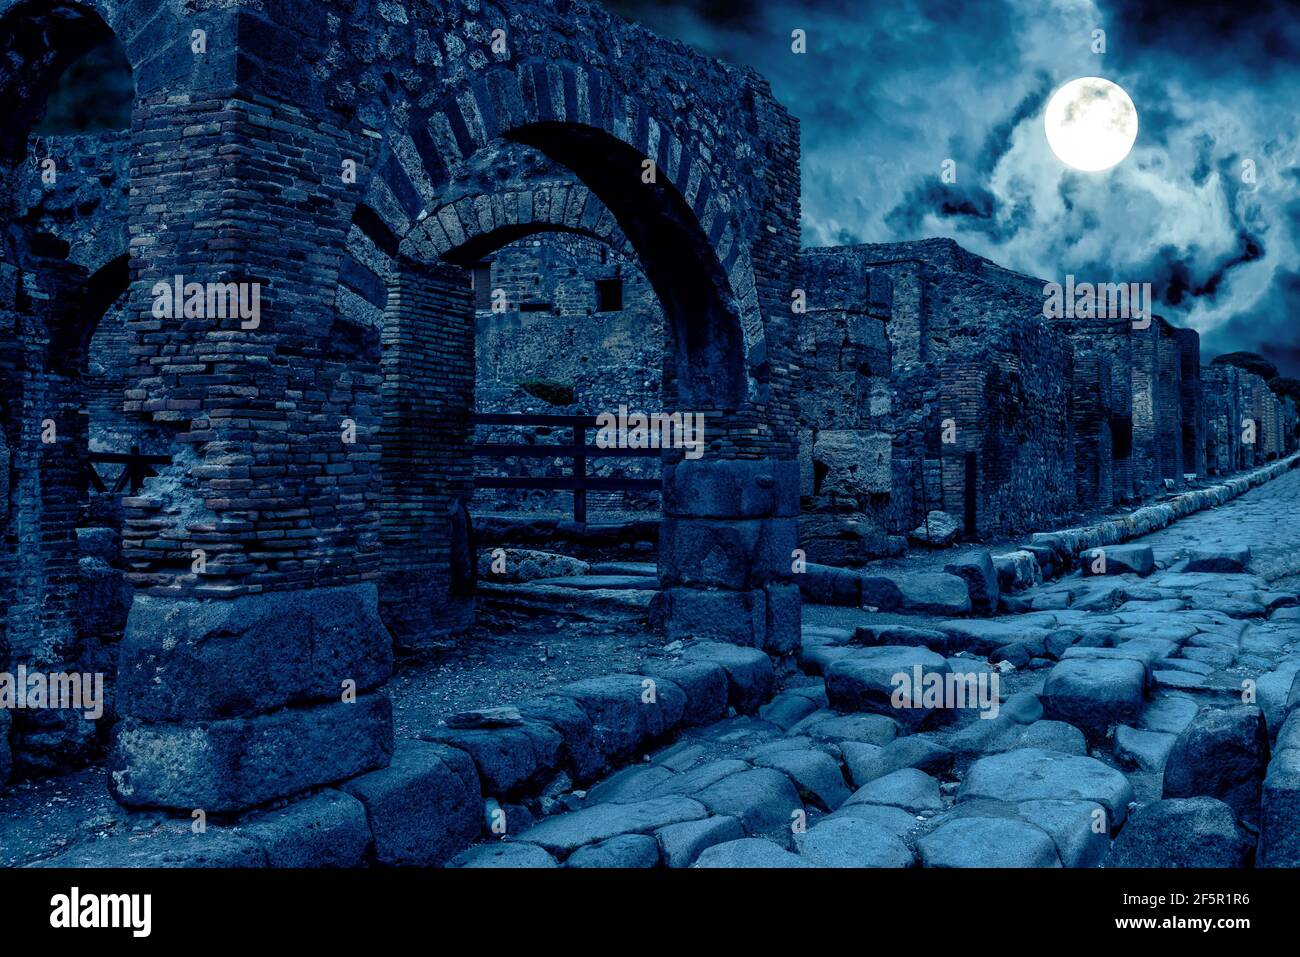 Pompei di notte, Italia. Vista apocalittica mistica di case distrutte della città antica in piena luna. Scena oscura spooky per il tema di Halloween. Concetto di h Foto Stock